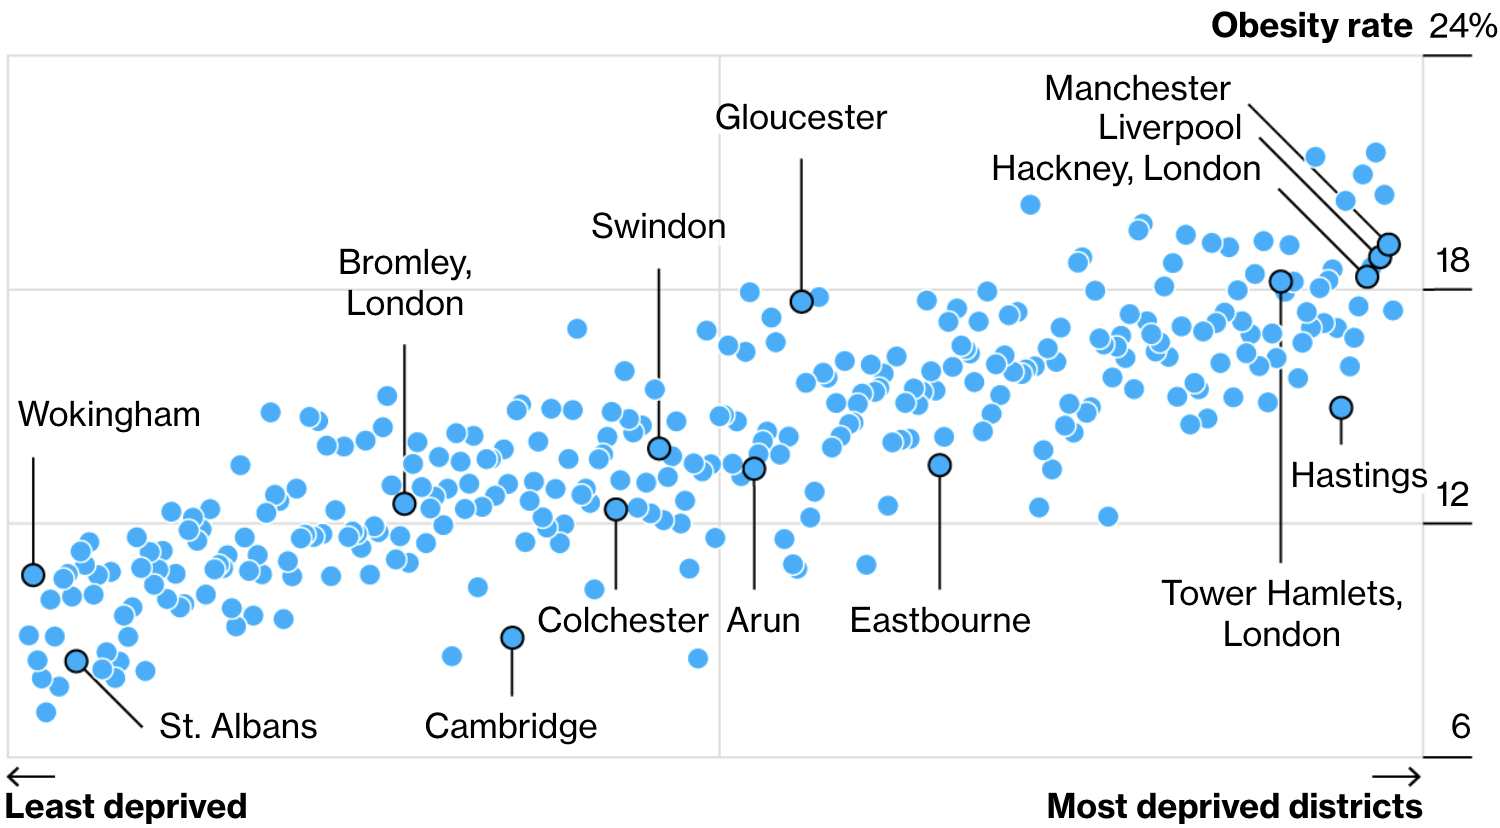 Результаты исследования ожирения среди английских детей по районам и достатку. Горизонталь — благосостояние района: чем левее, тем богаче. Вертикаль — показатели ожирения в процентах страдающих ожирением от общего количества детей. Источник: Bloomberg